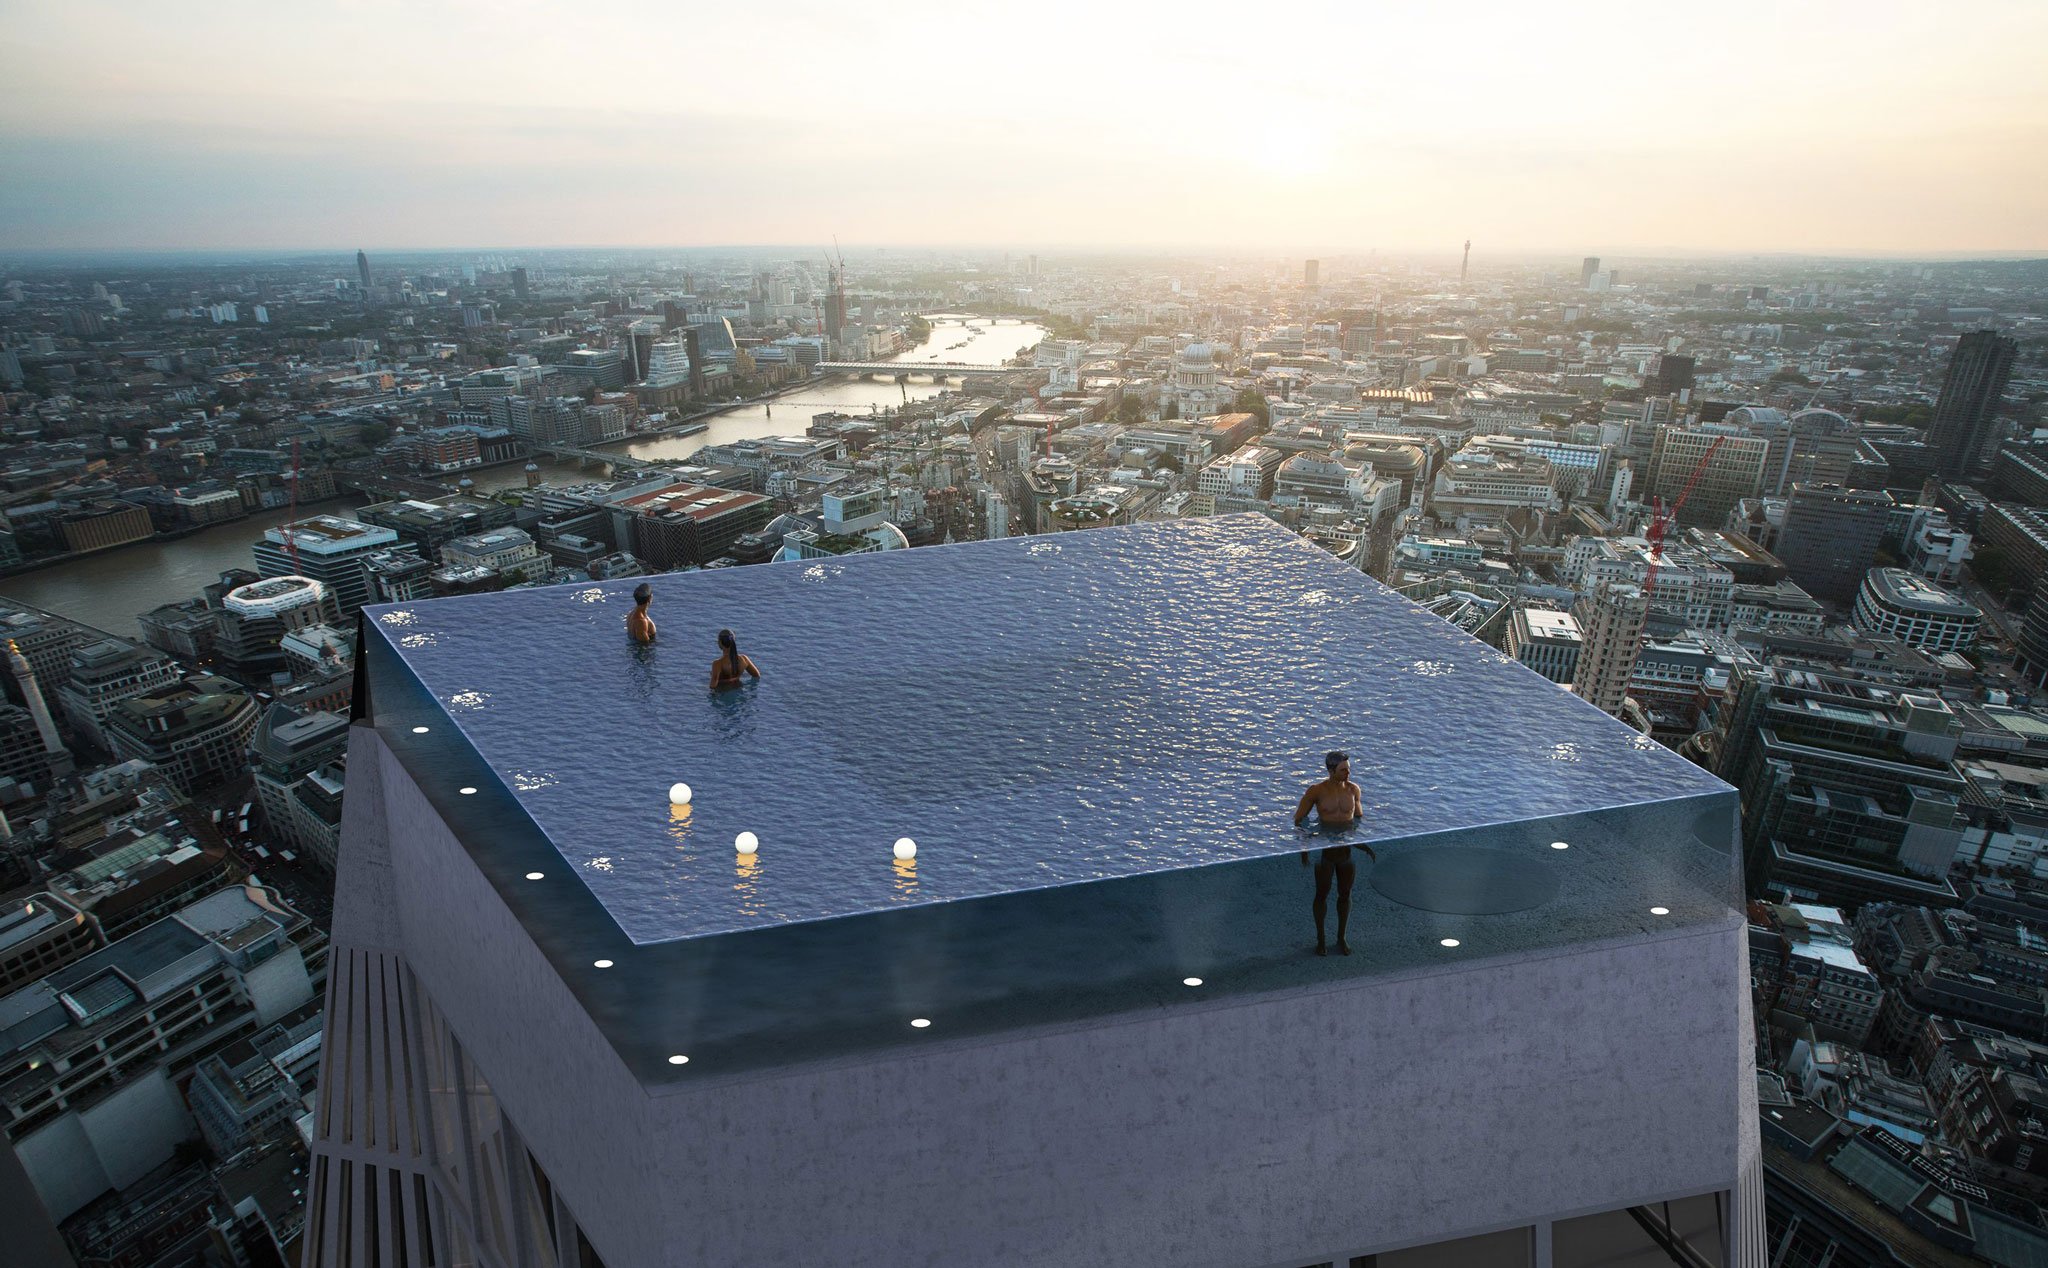 Bể bơi vô cực 360 độ trên nóc cao ốc tại London, làm sao để vào bơi?